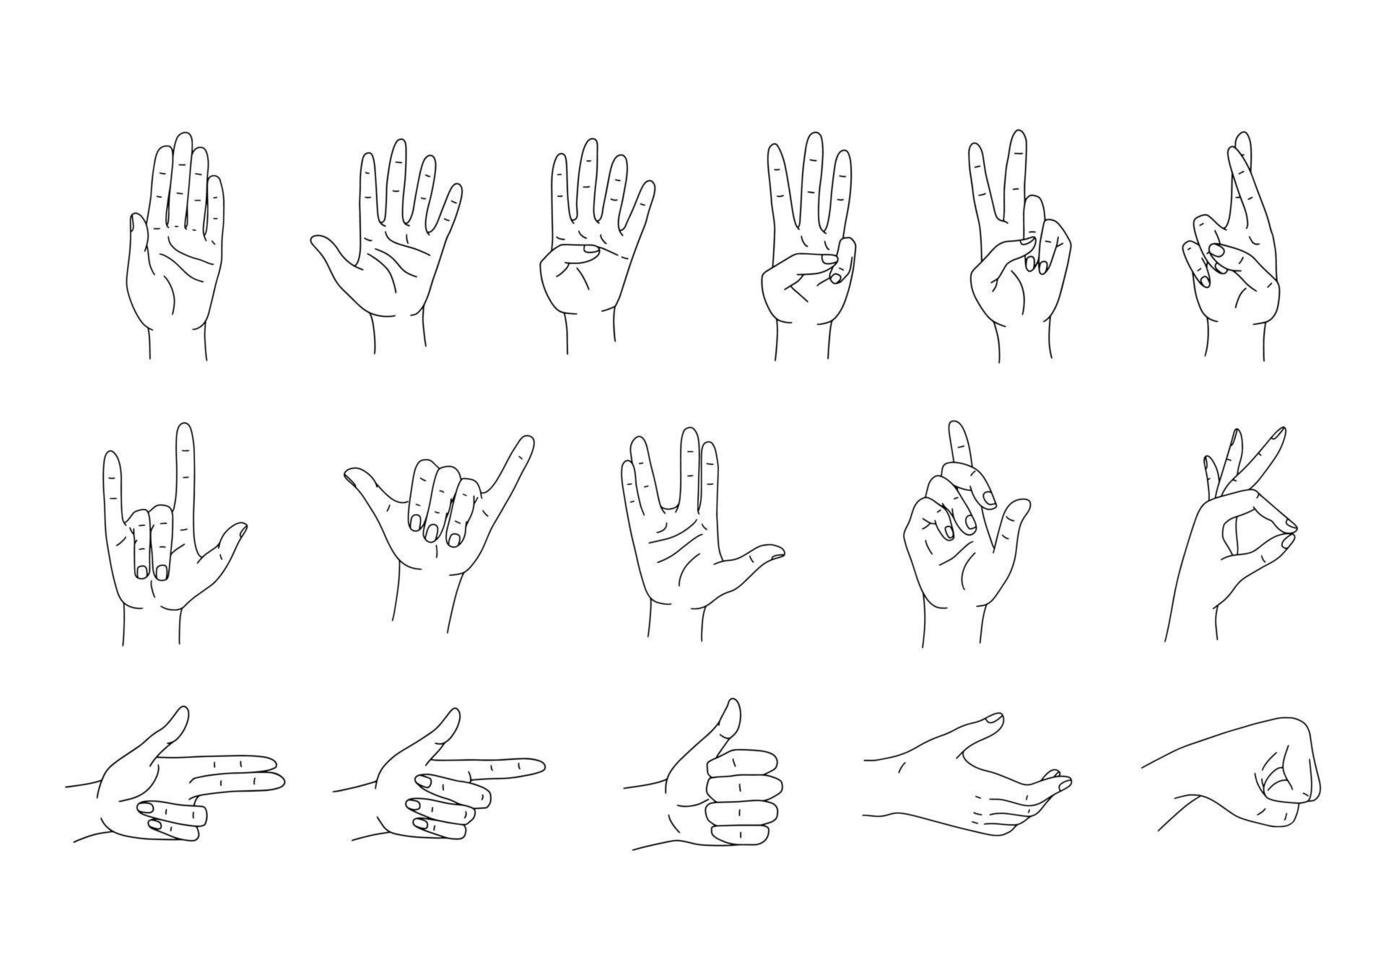 Hände stellen Vektorset dar. verschiedene Handgesten Strichzeichnungen. vektorillustration lokalisiert auf weiß vektor